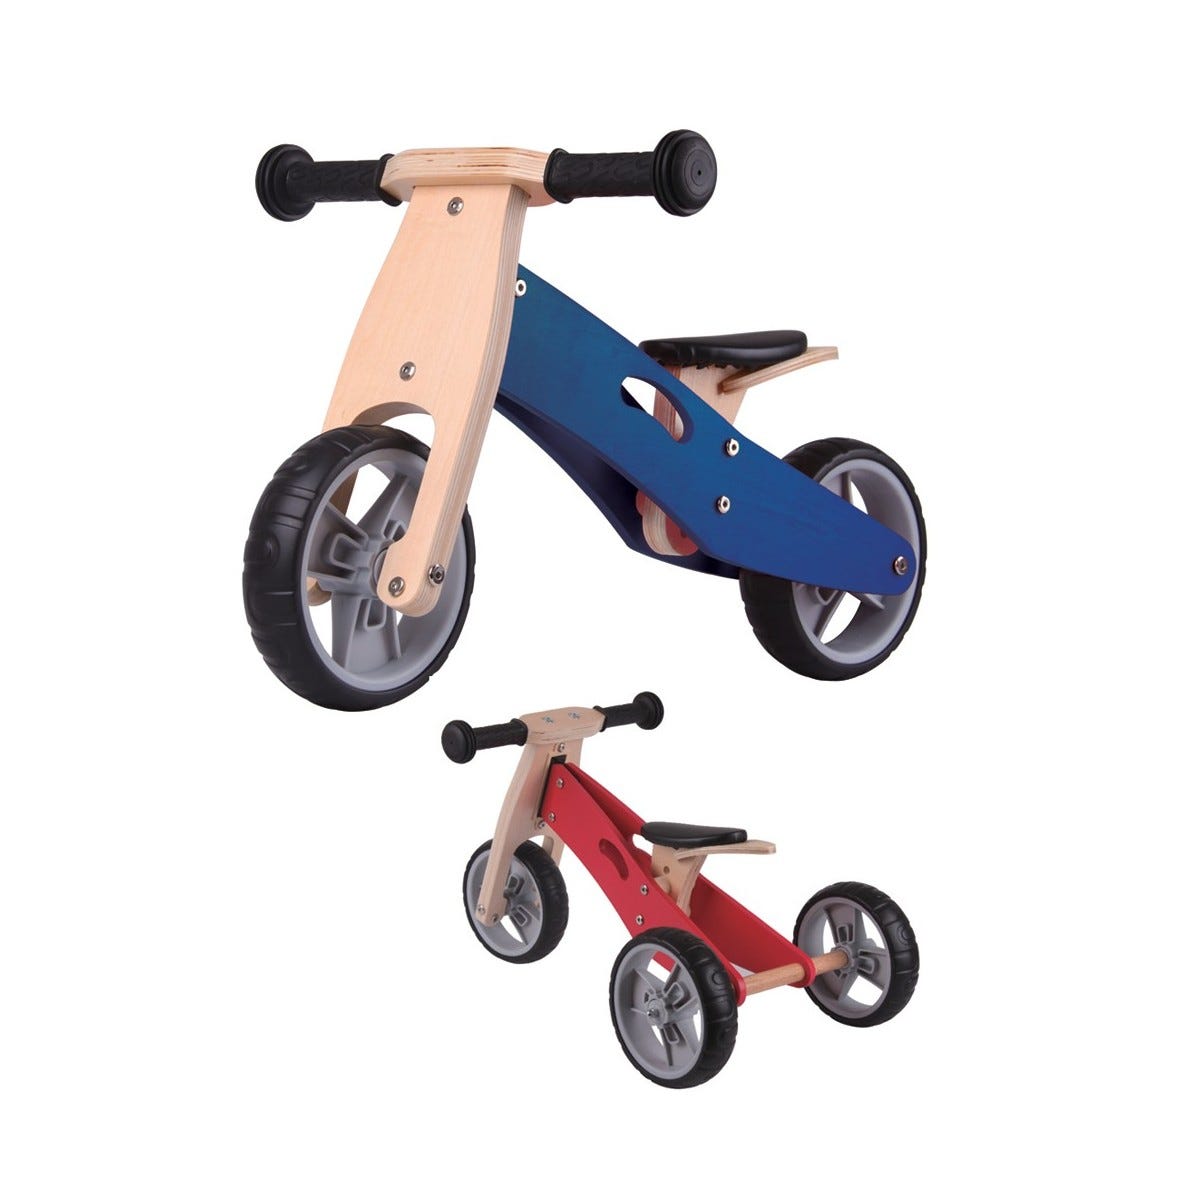 Triciclo Bicicletta per Bambini Legno Blu Pedagogica Senza Pedali